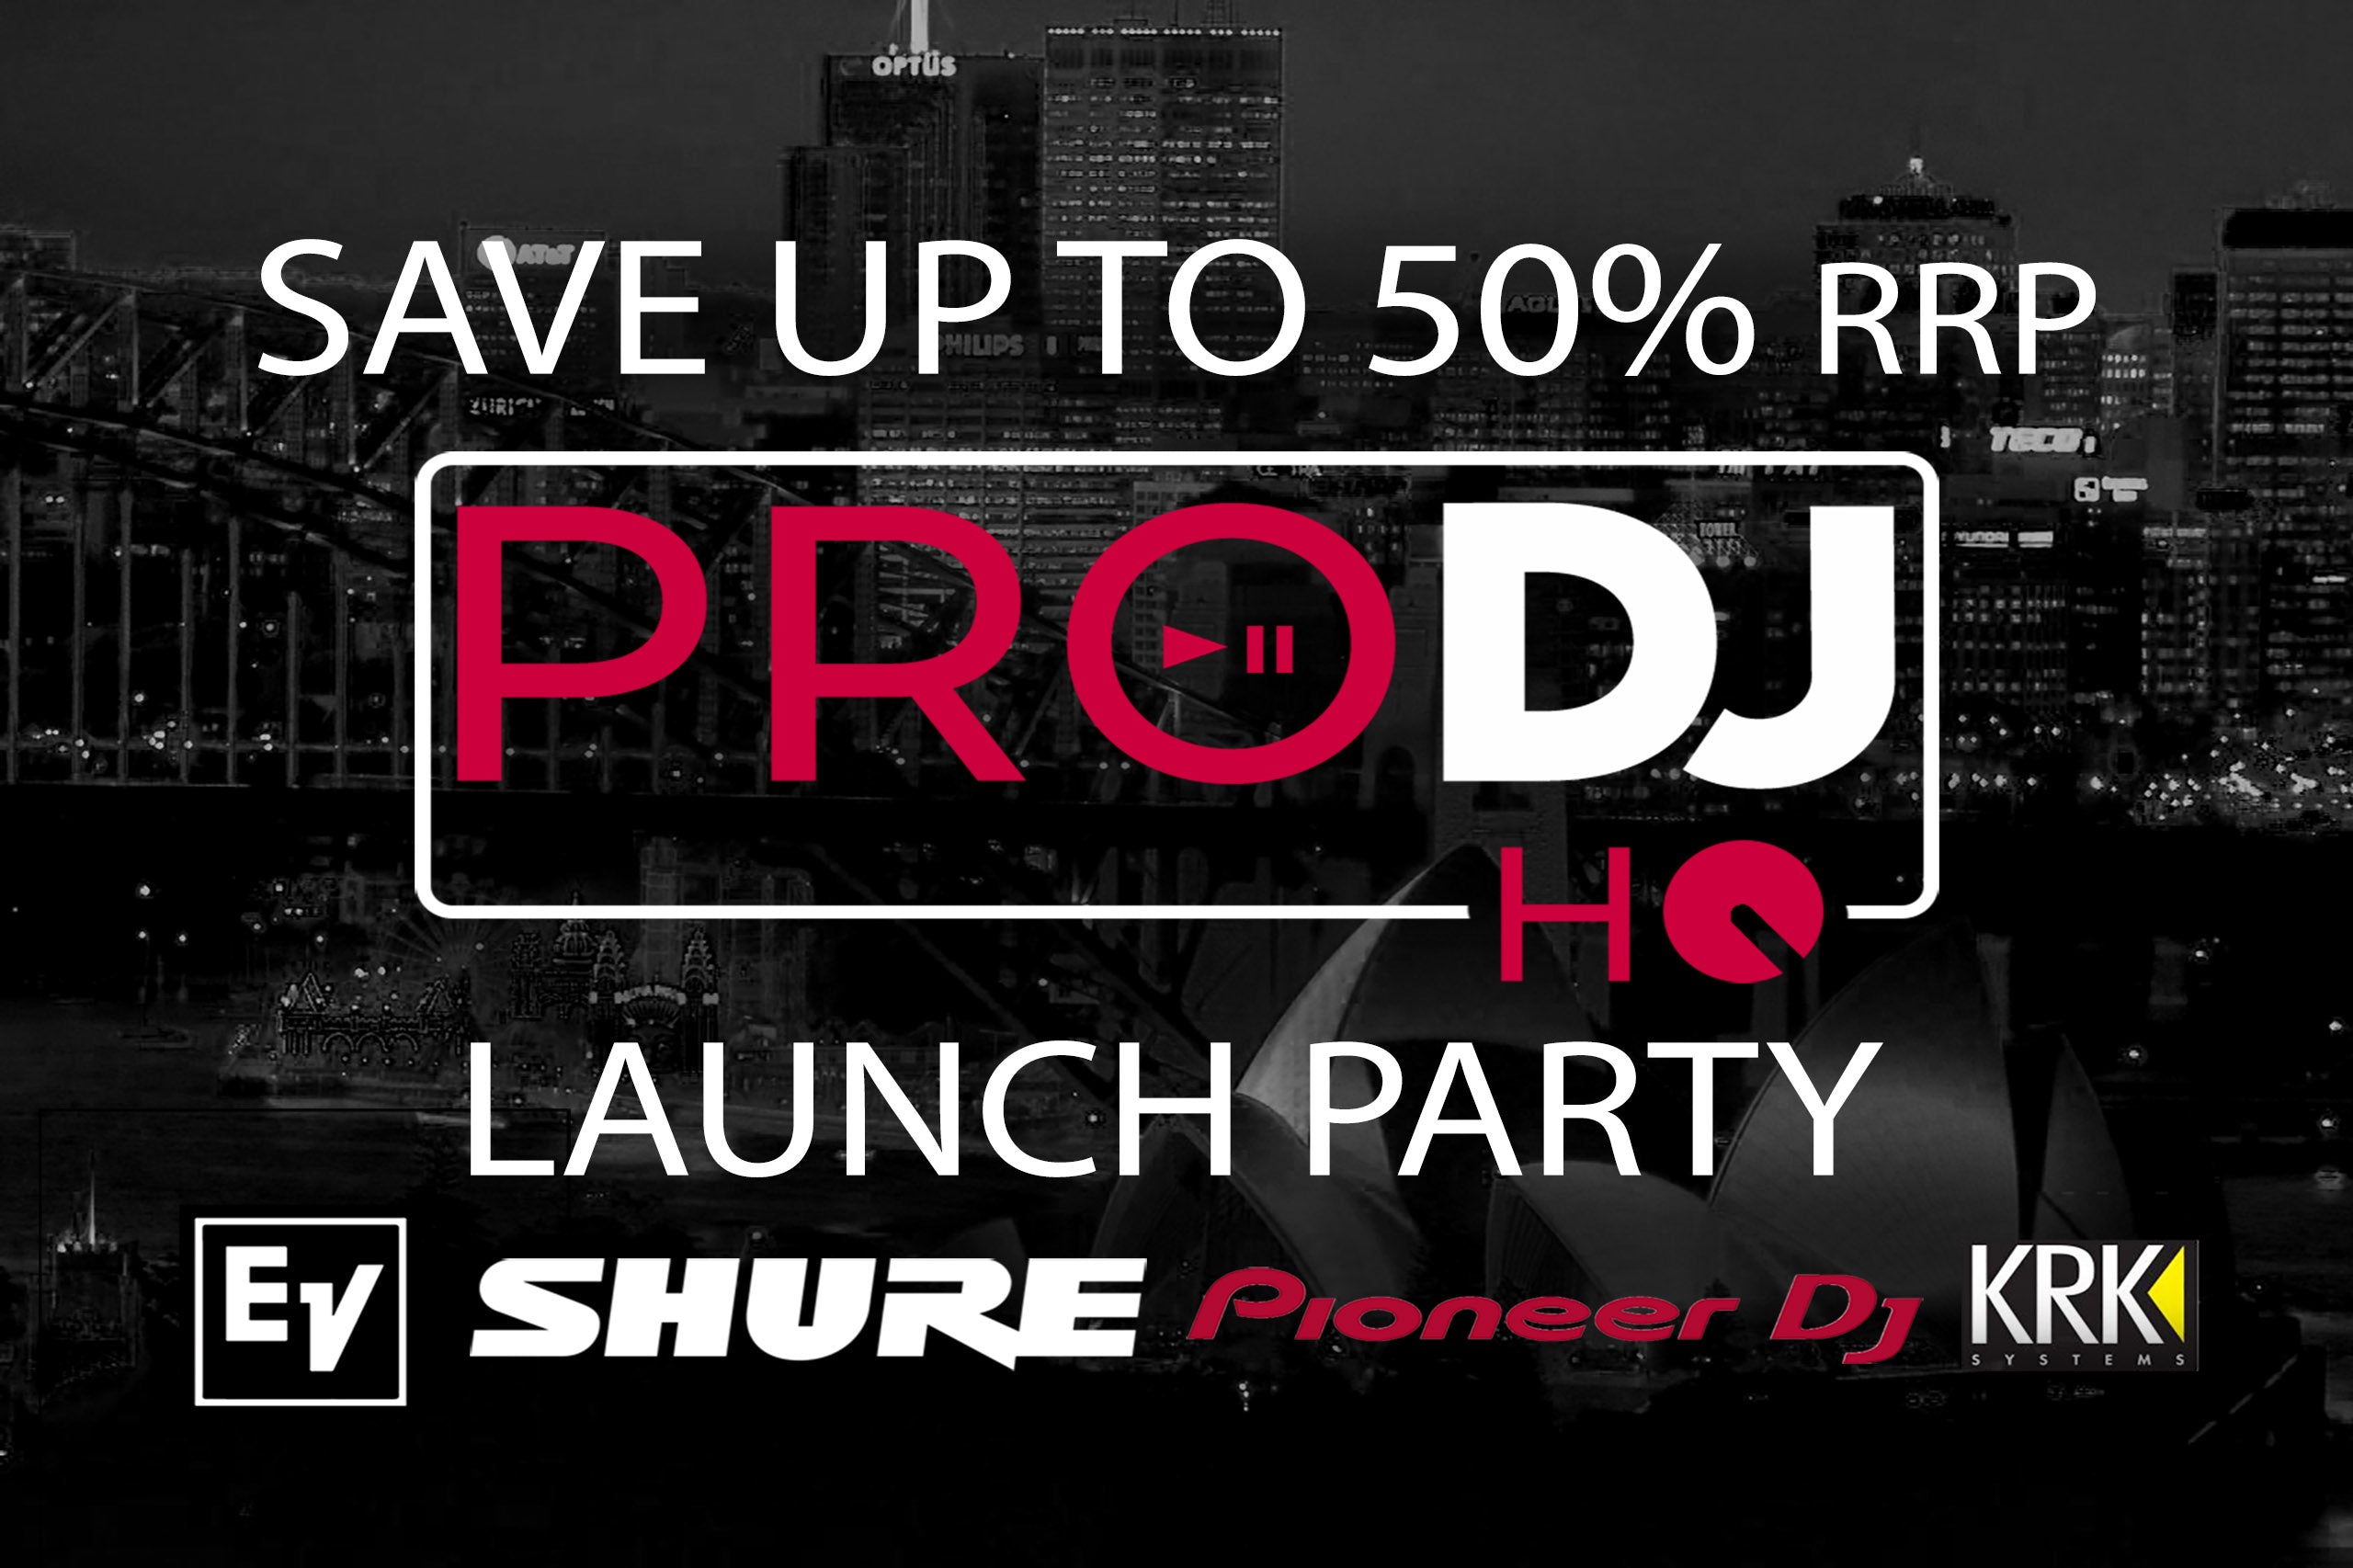 Pro DJ HQ Soft Launch Party - June 23'